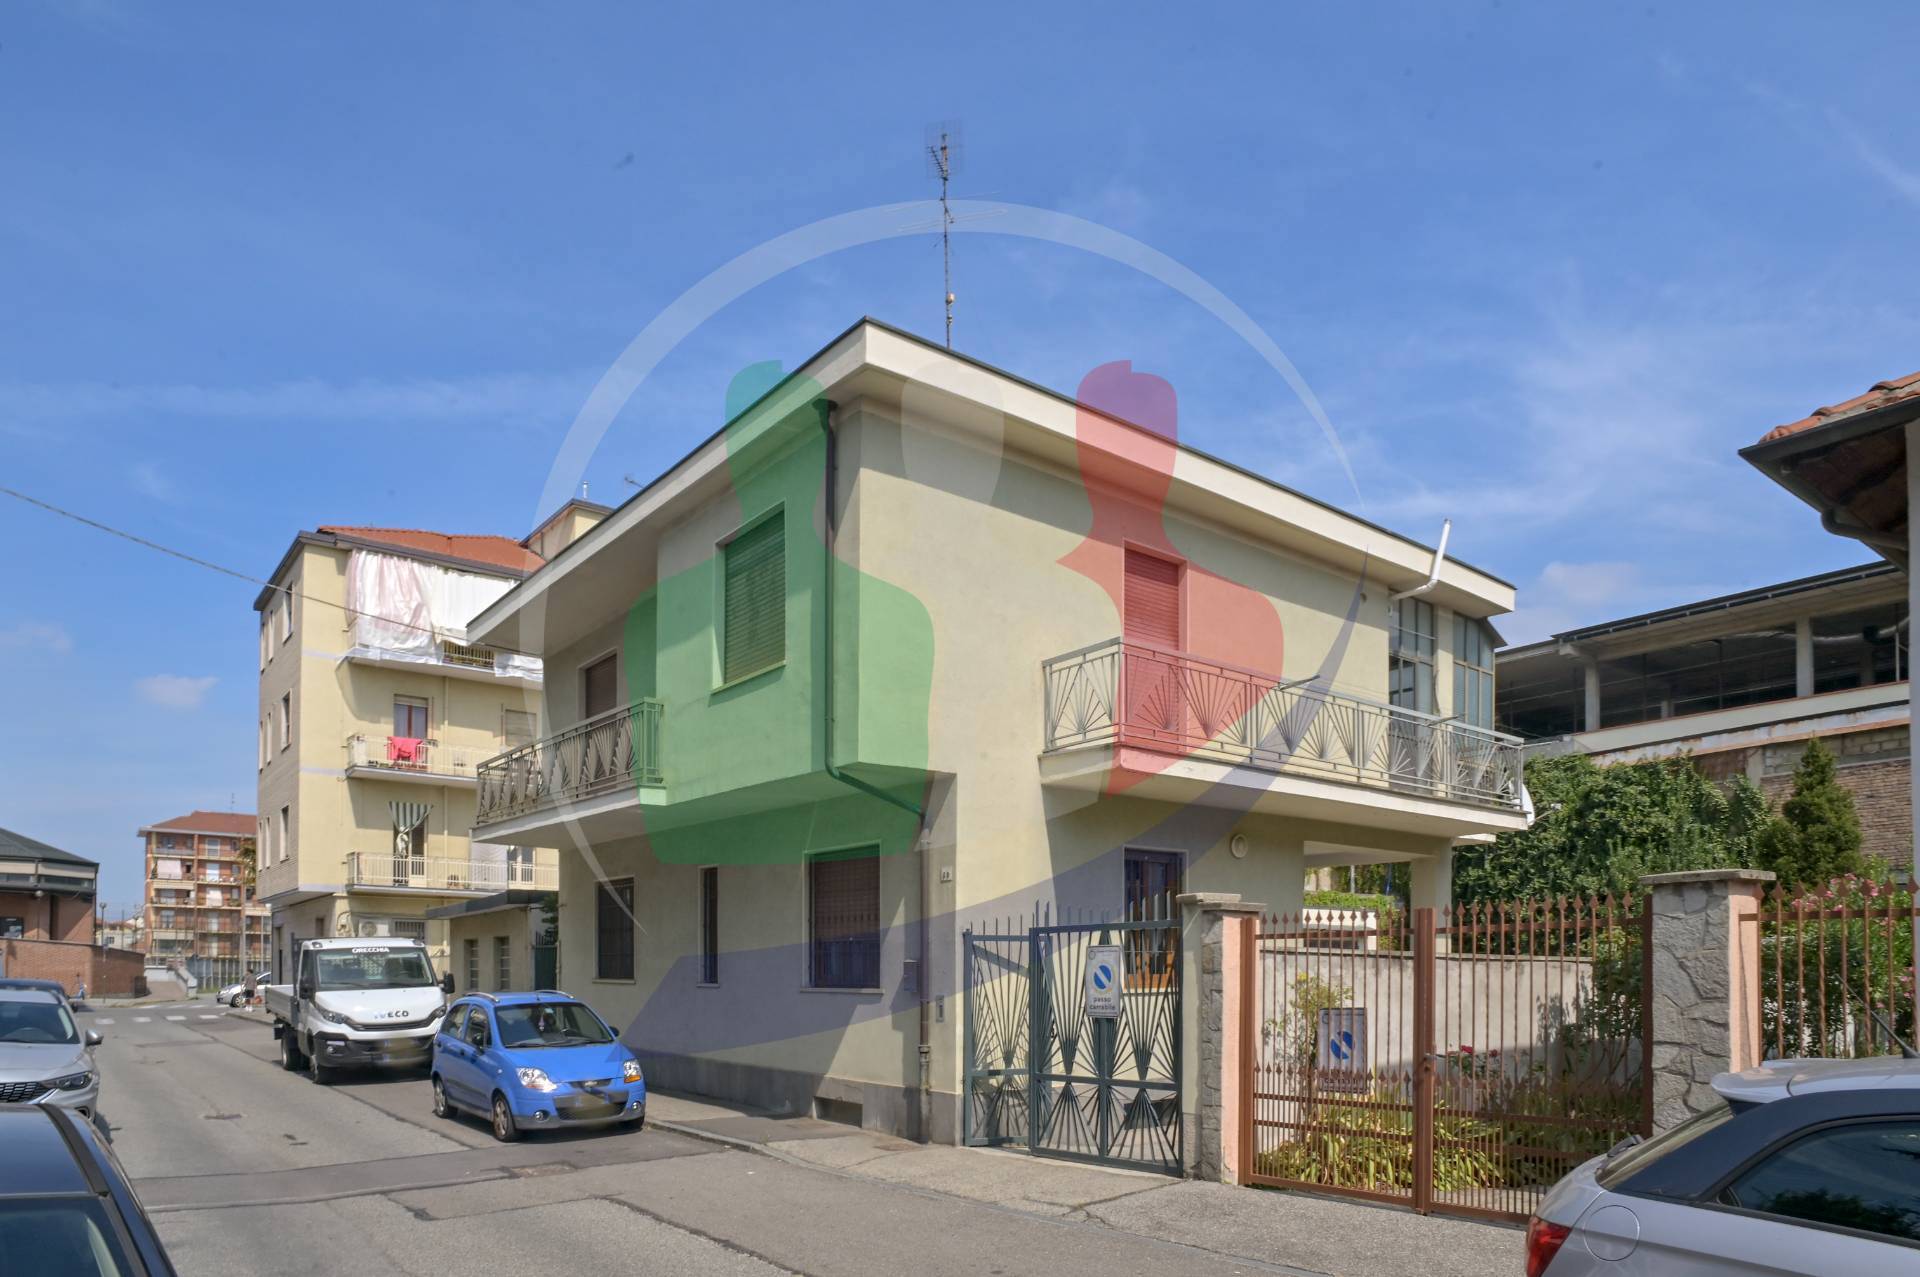 Villa Bifamiliare in vendita a Nichelino, 7 locali, prezzo € 330.000 | PortaleAgenzieImmobiliari.it